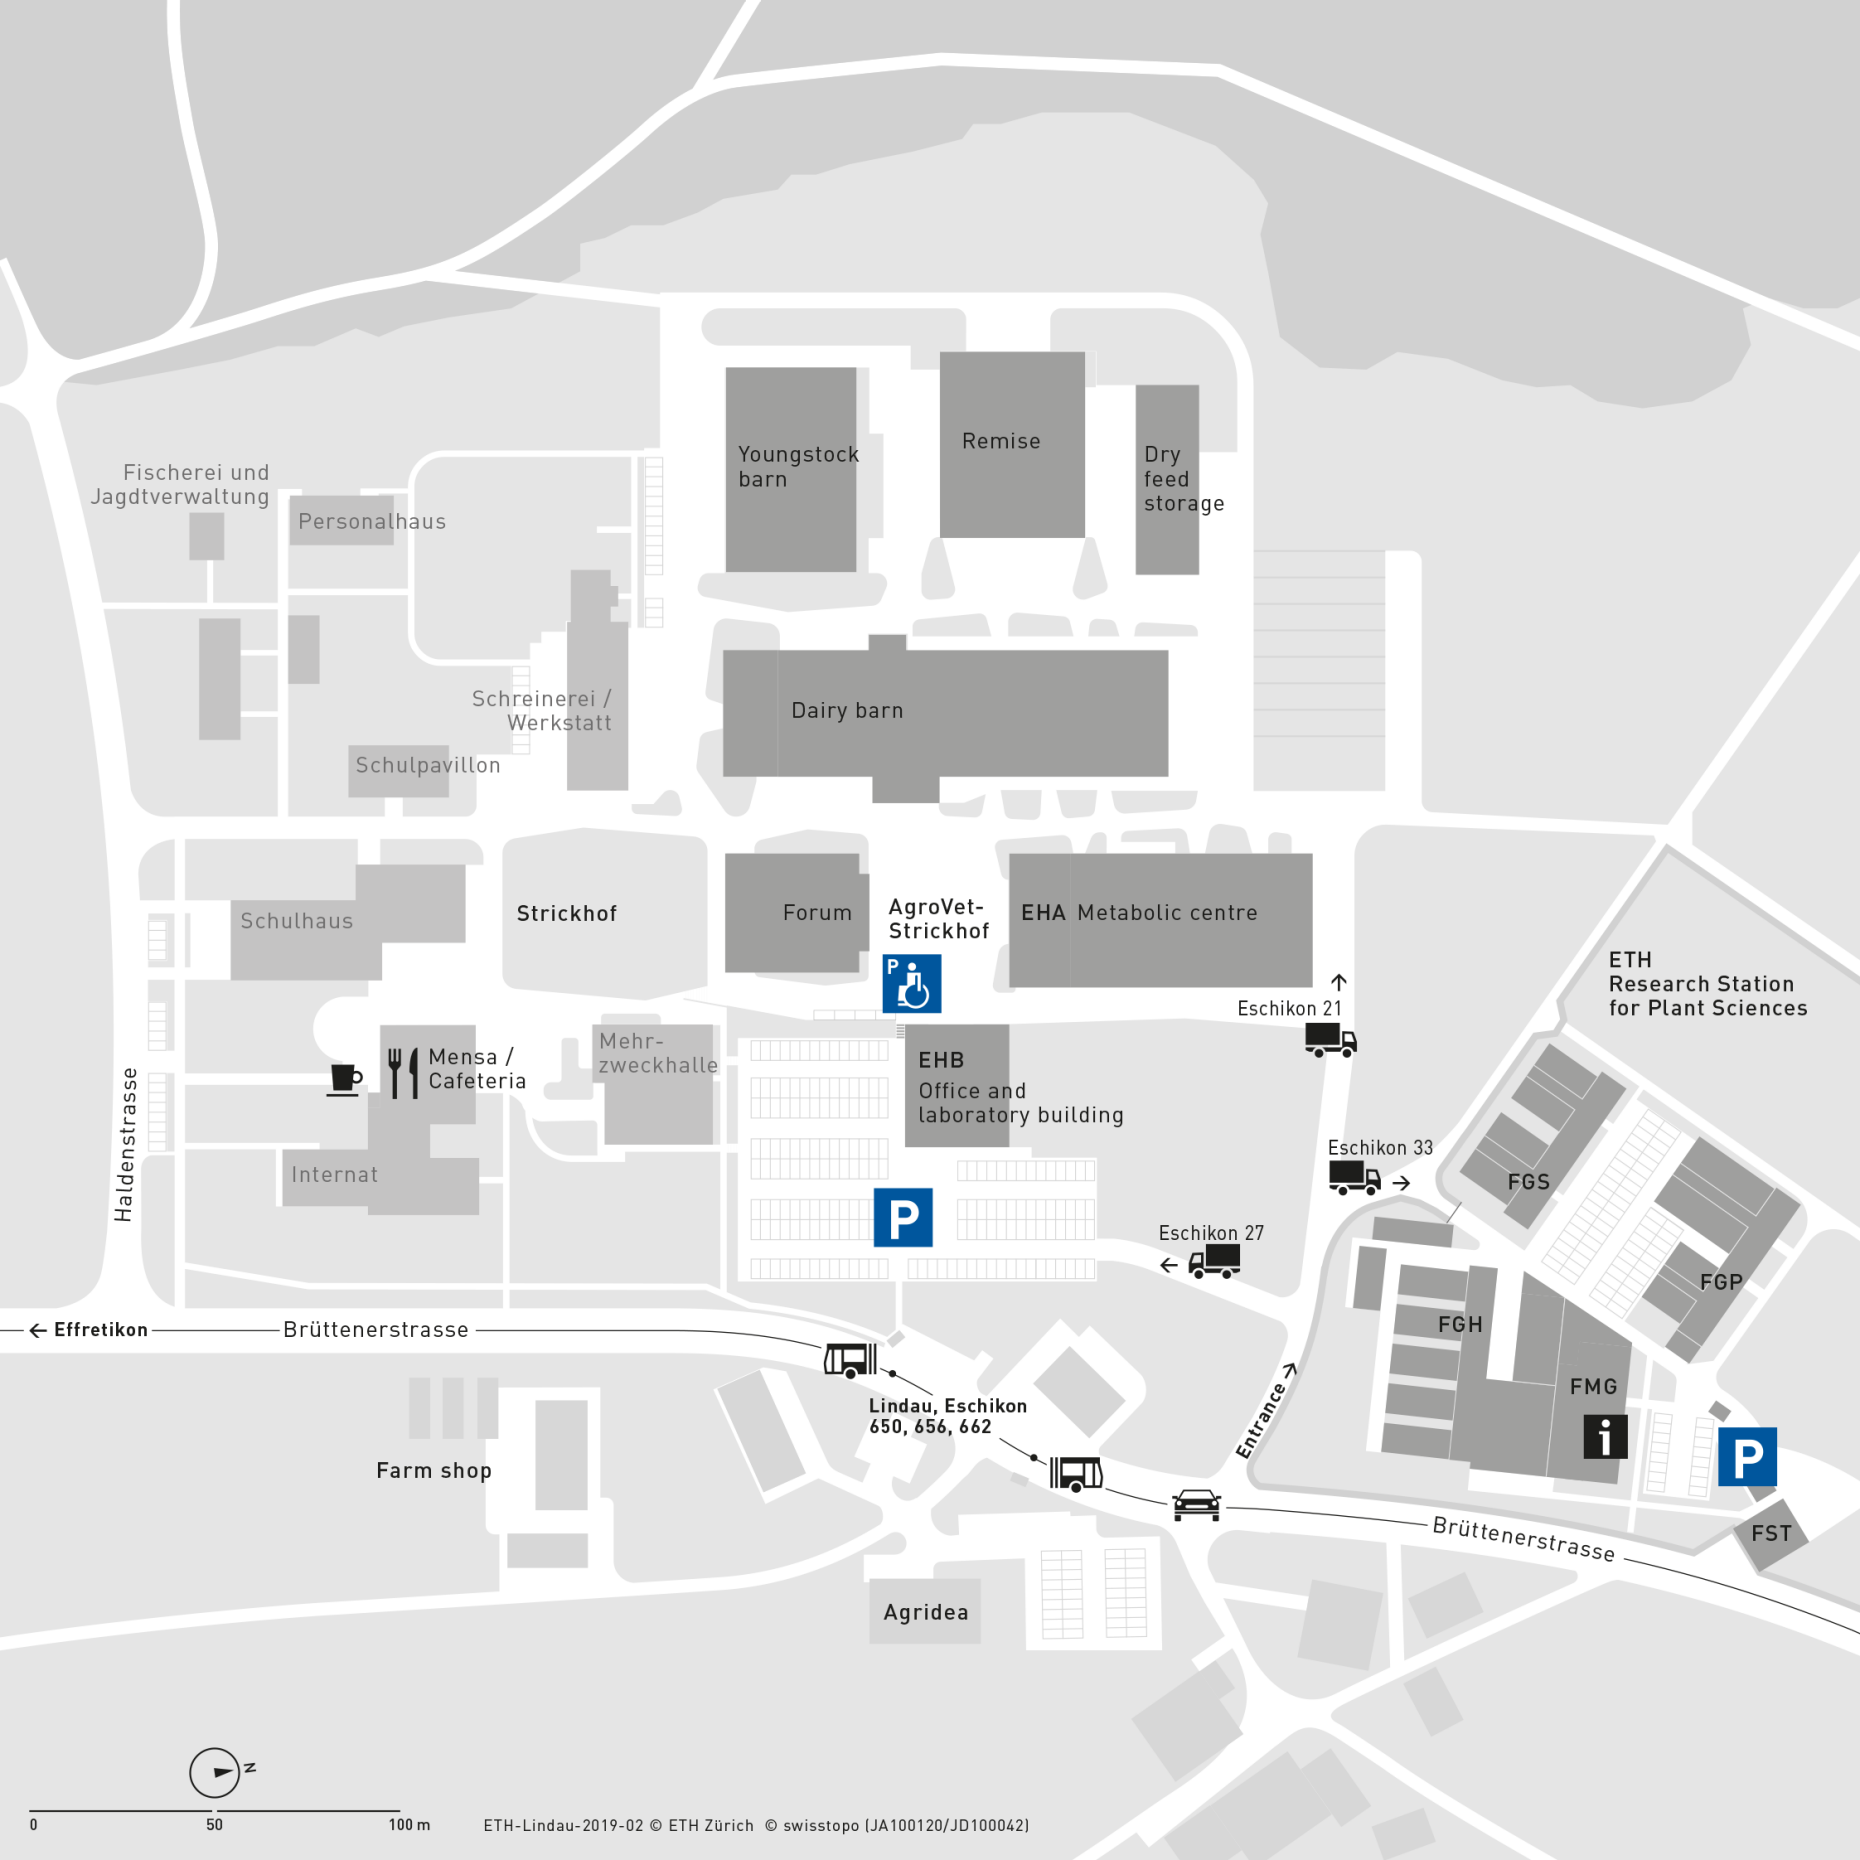 Enlarged view: Area plan Lindau